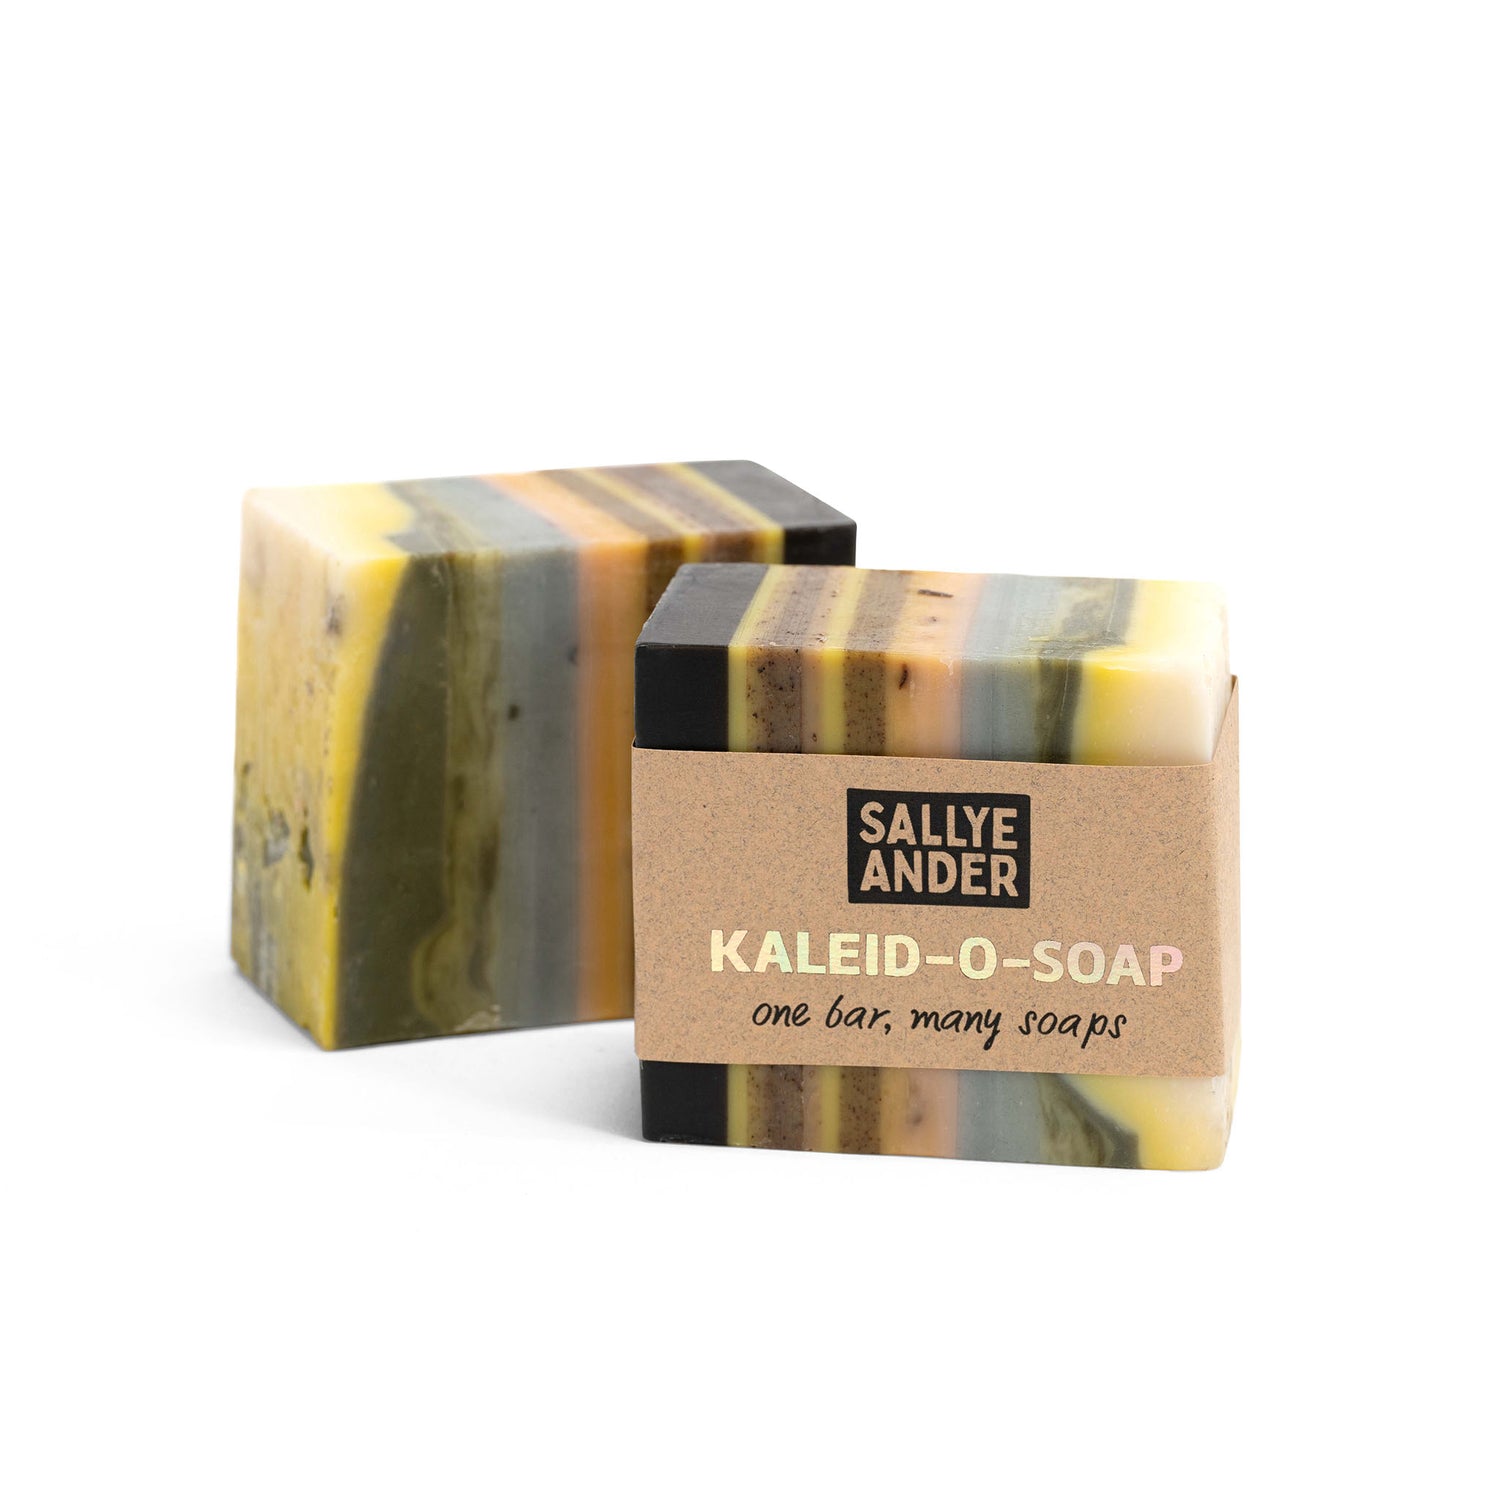 Kaleid-O-Soap